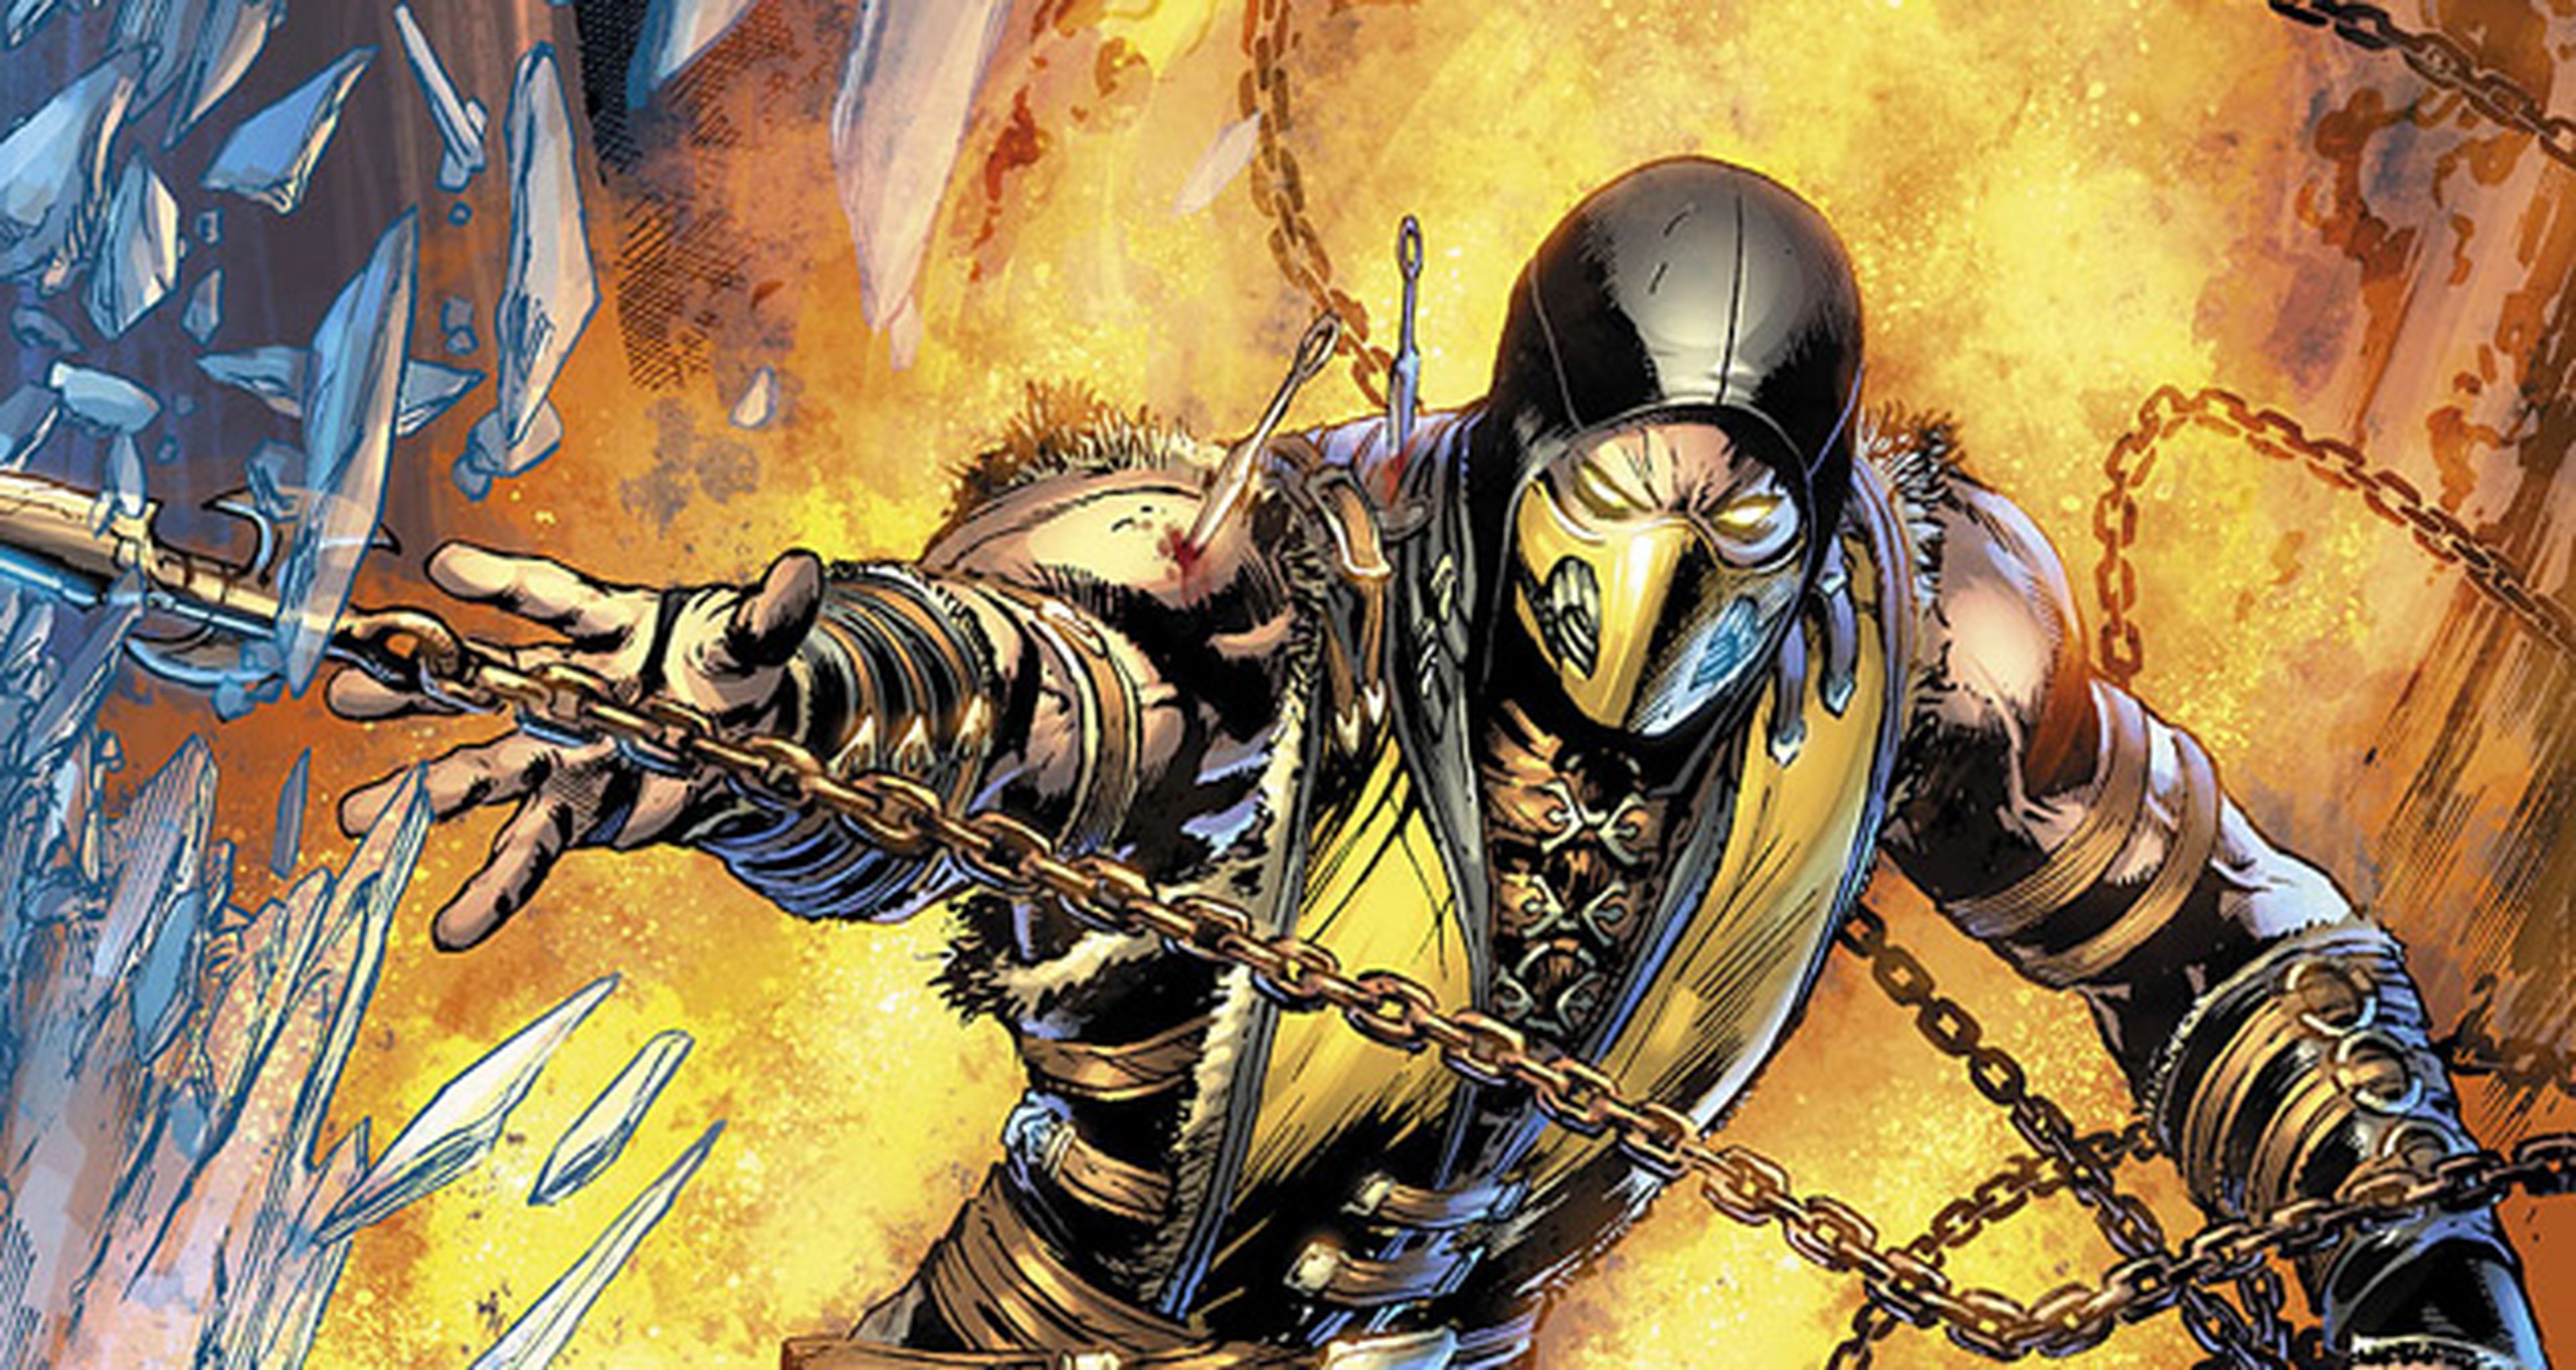 Avance del cómic de Mortal Kombat X